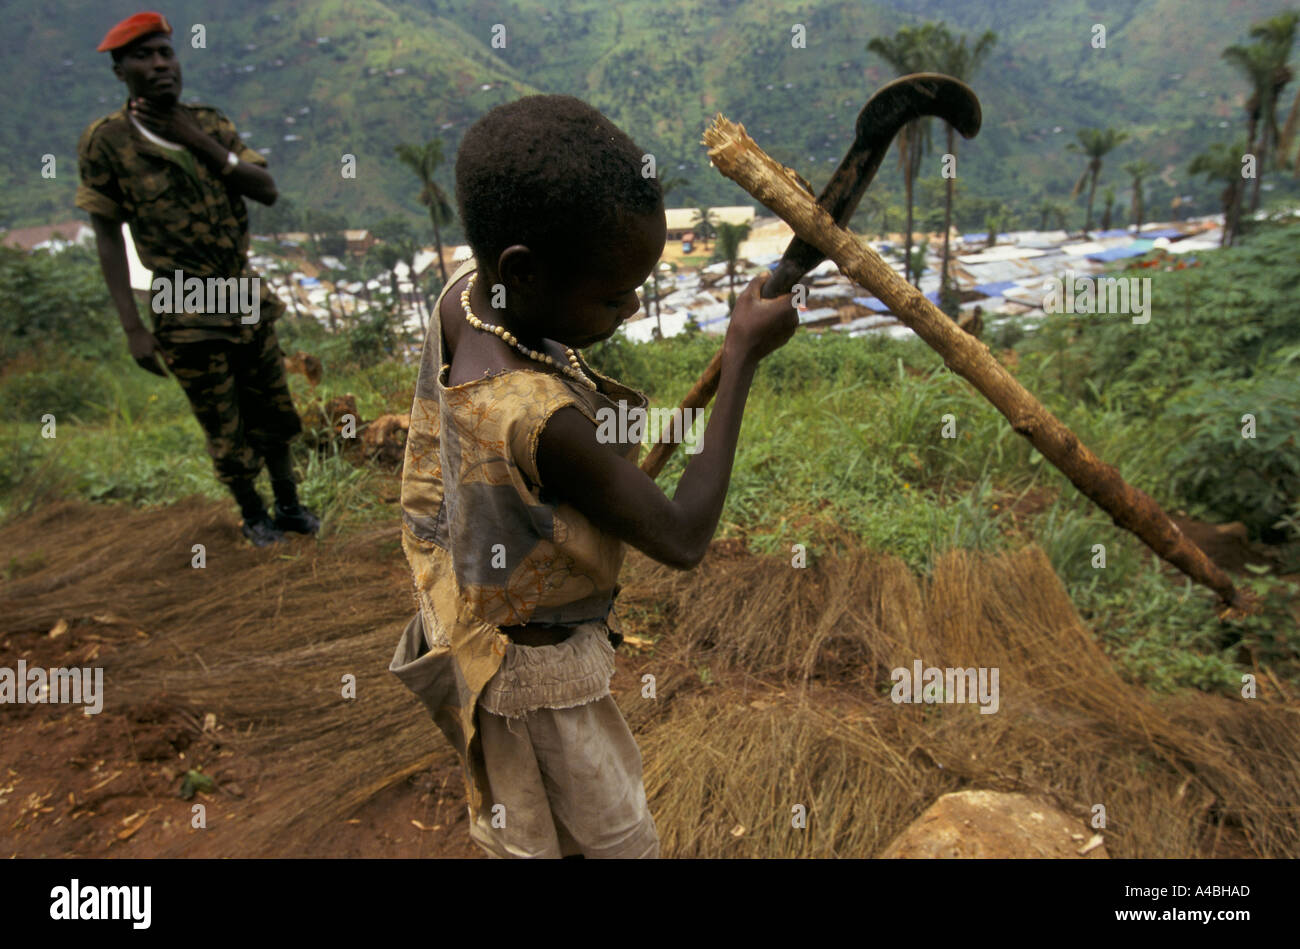 Bohonga camp de regroupement, le Burundi Feb 2000 : un soldat garde le camp regarde une jeune fille coupe de bois de chauffage Banque D'Images